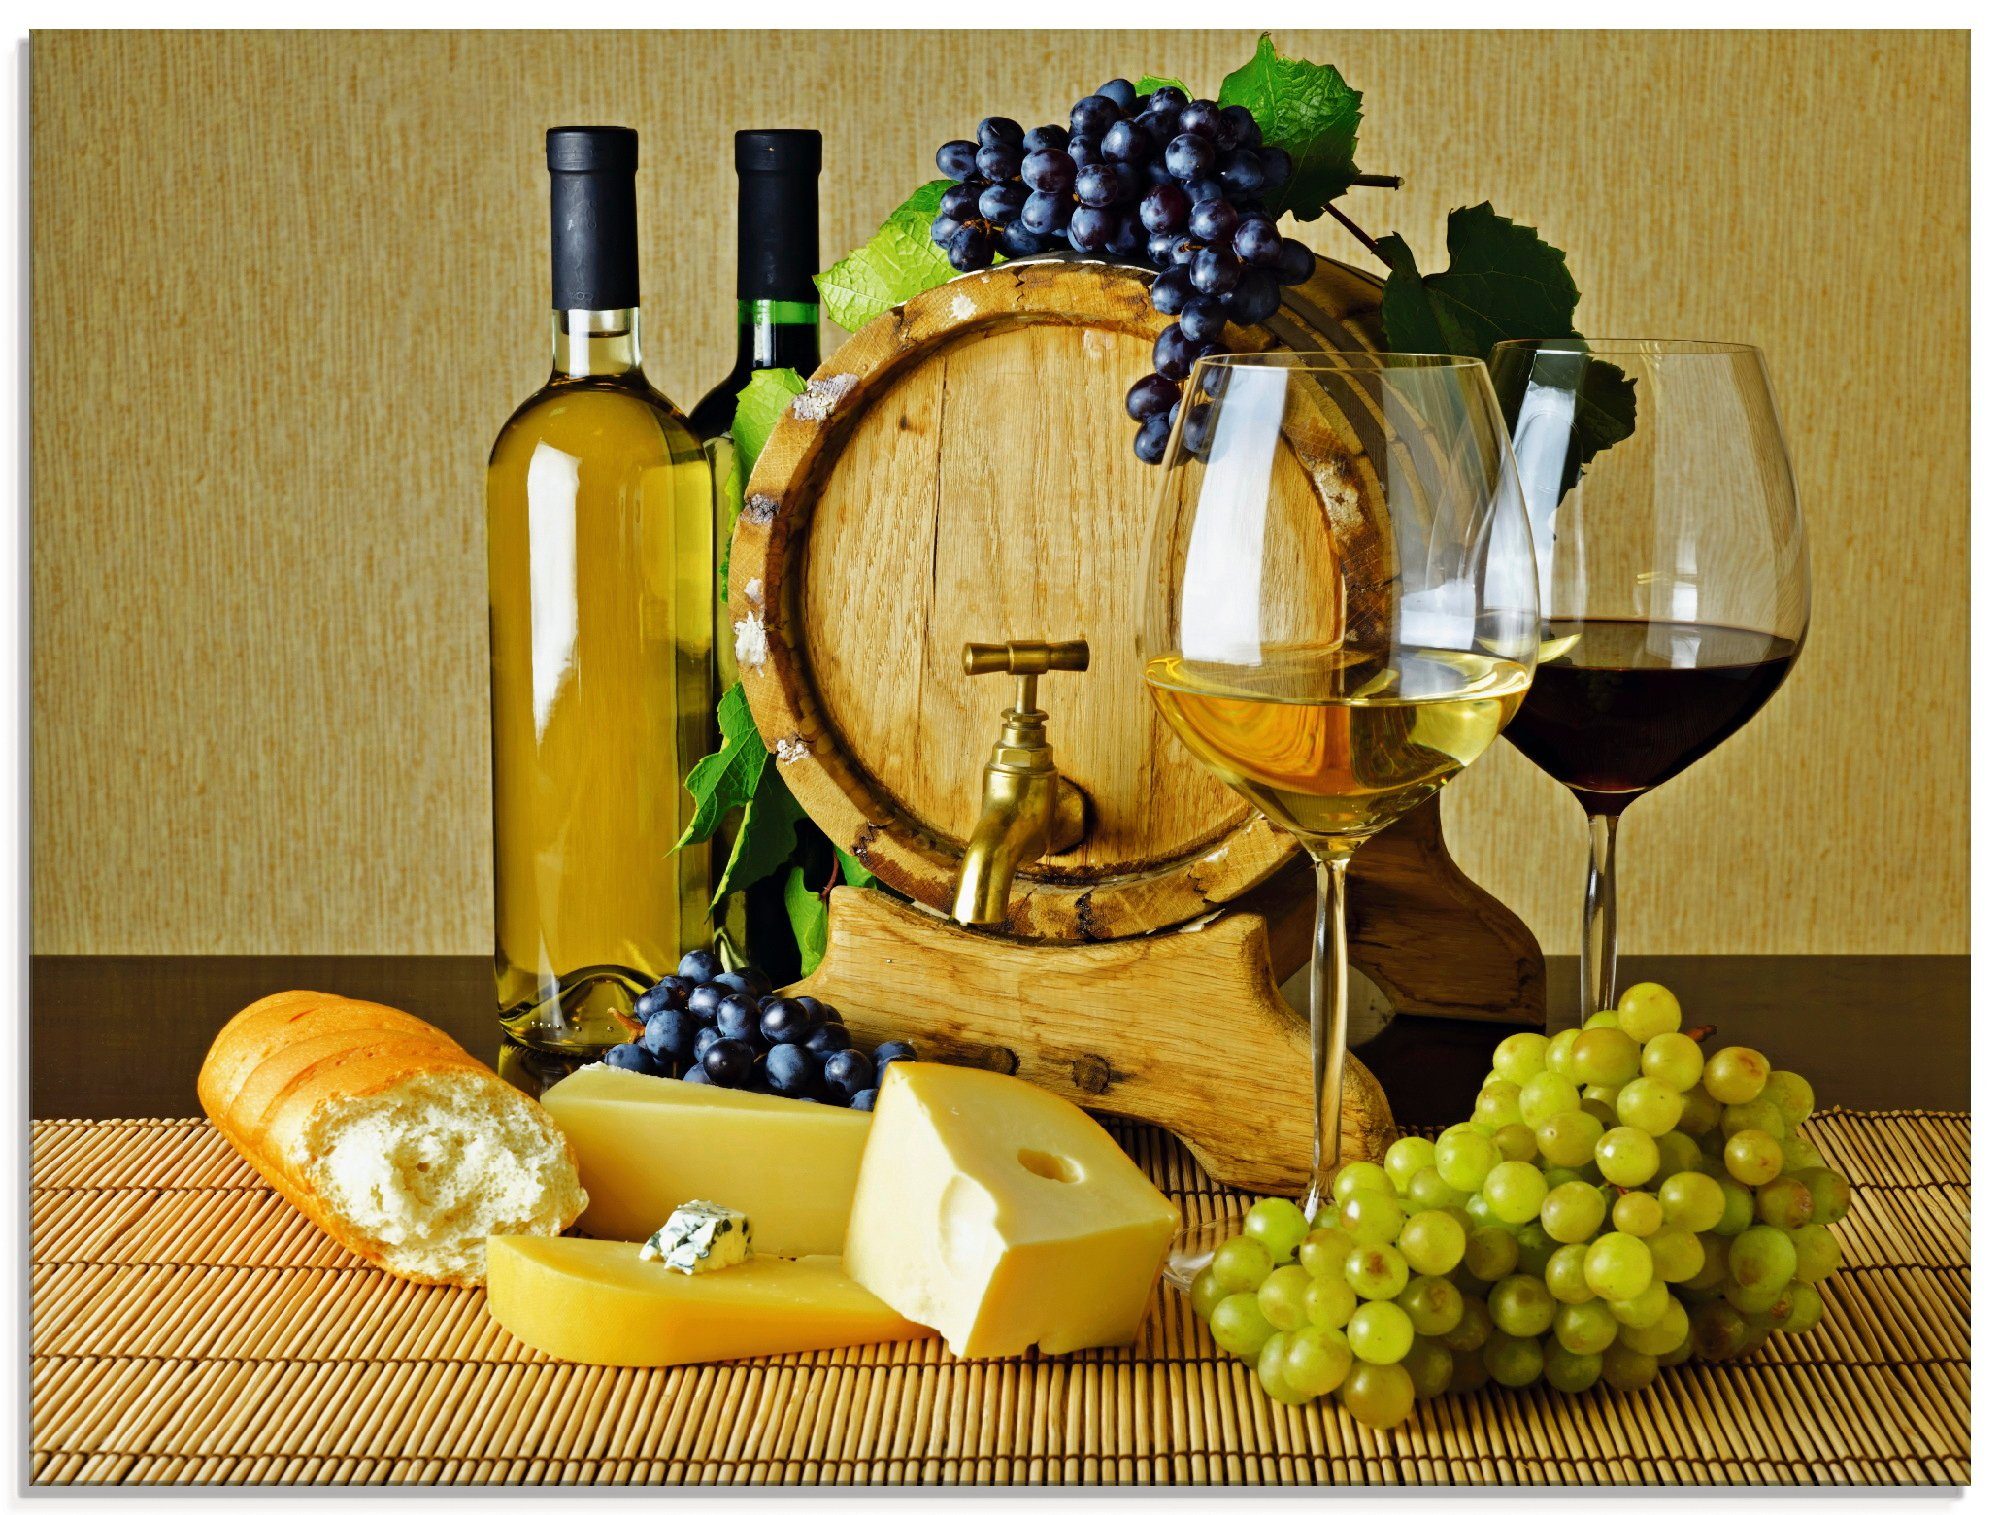 St), Glasbild und (1 Trauben, Artland Käse, Größen in verschiedenen Wein Lebensmittel